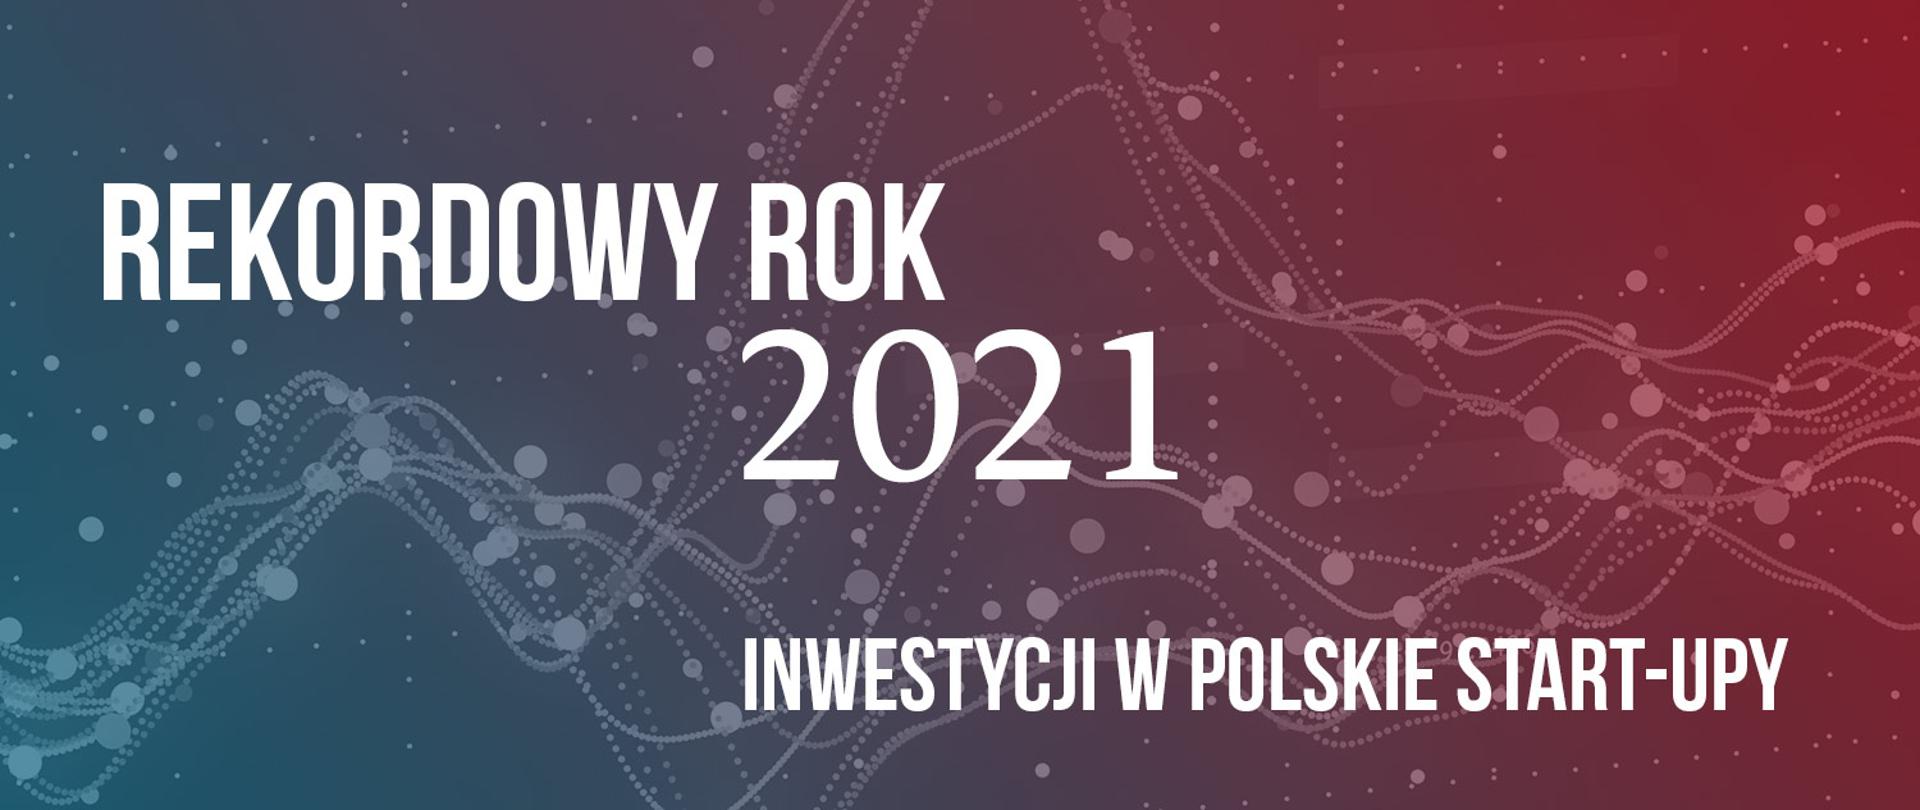 Rekordowy rok inwestycji w polskie start-upy 